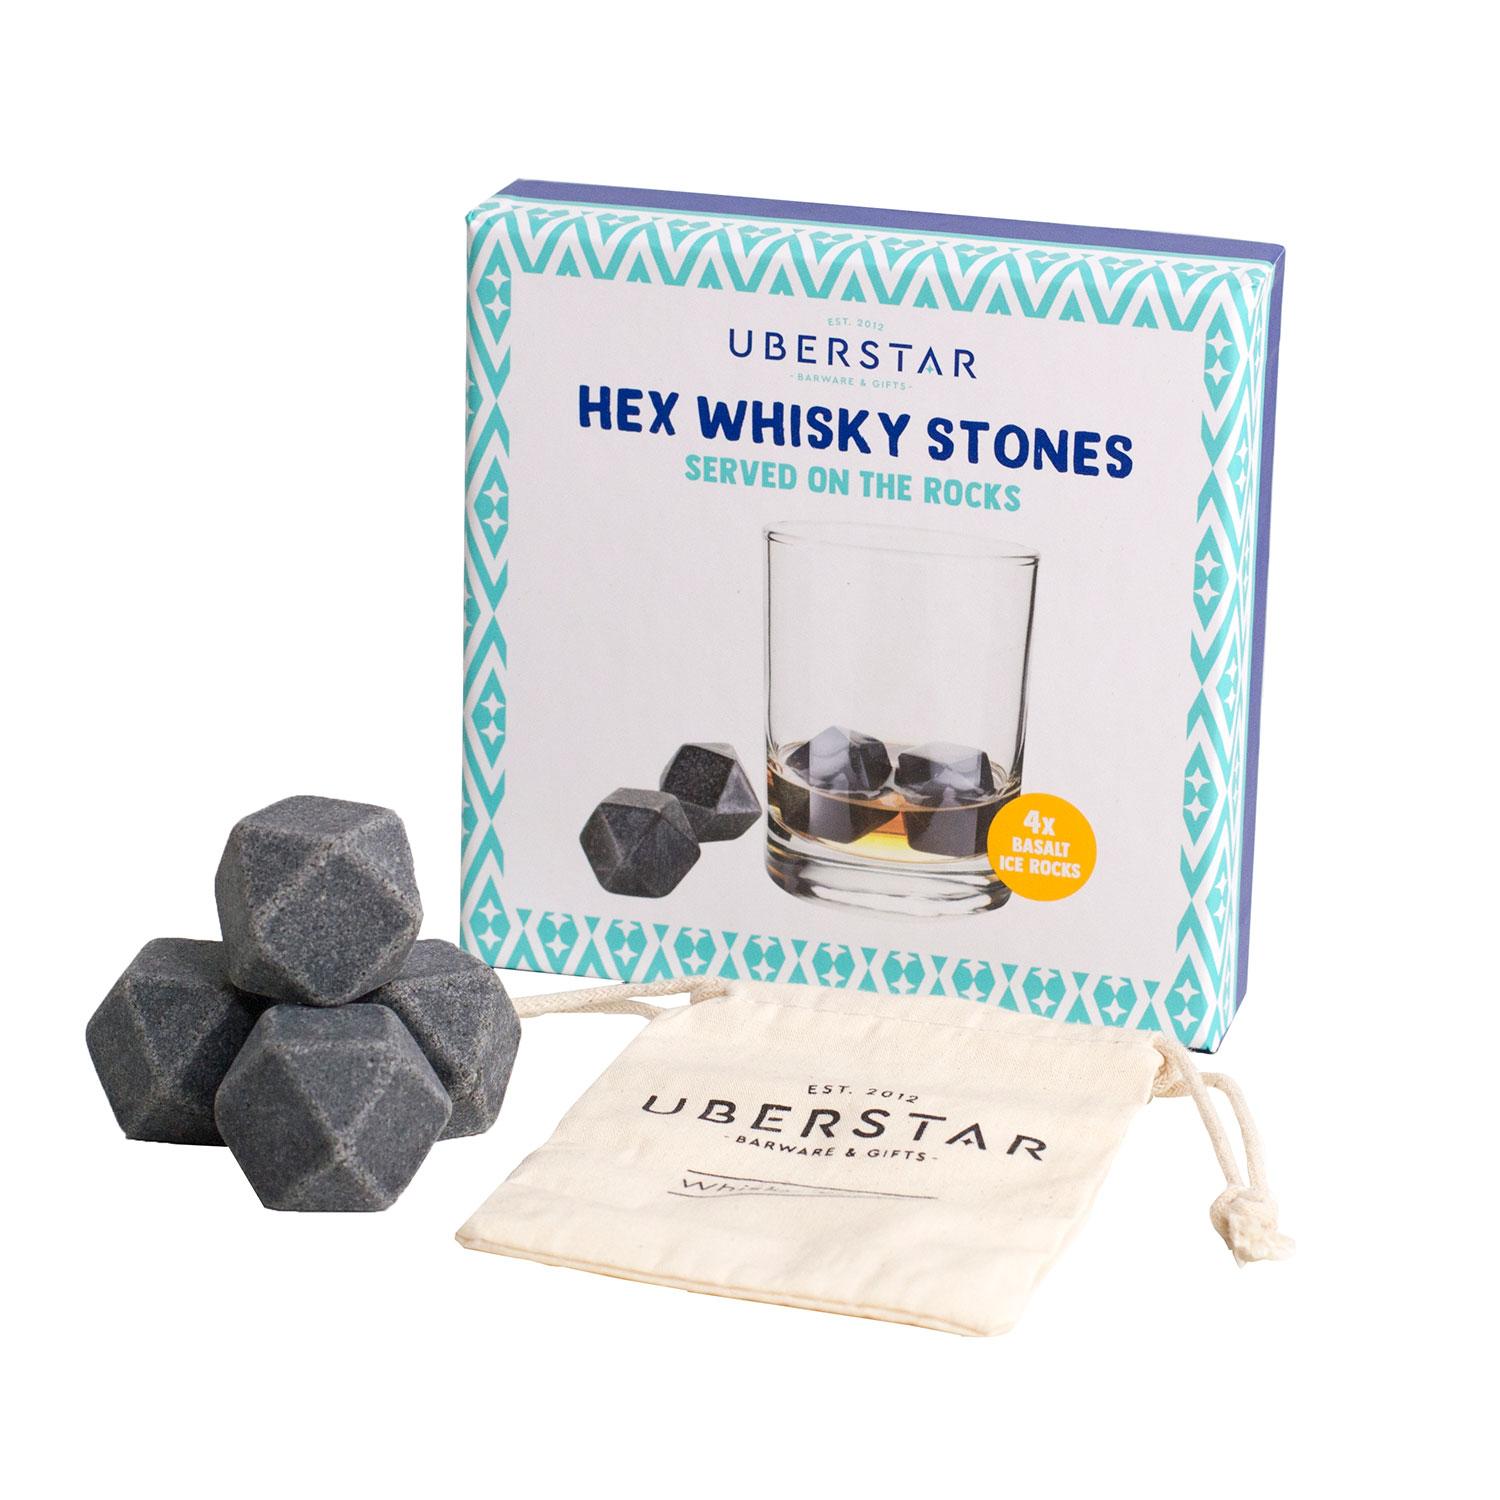 Uberstar Hex Whisky Stones - 4x Basalt Stones & Cotton Bag - £14.99